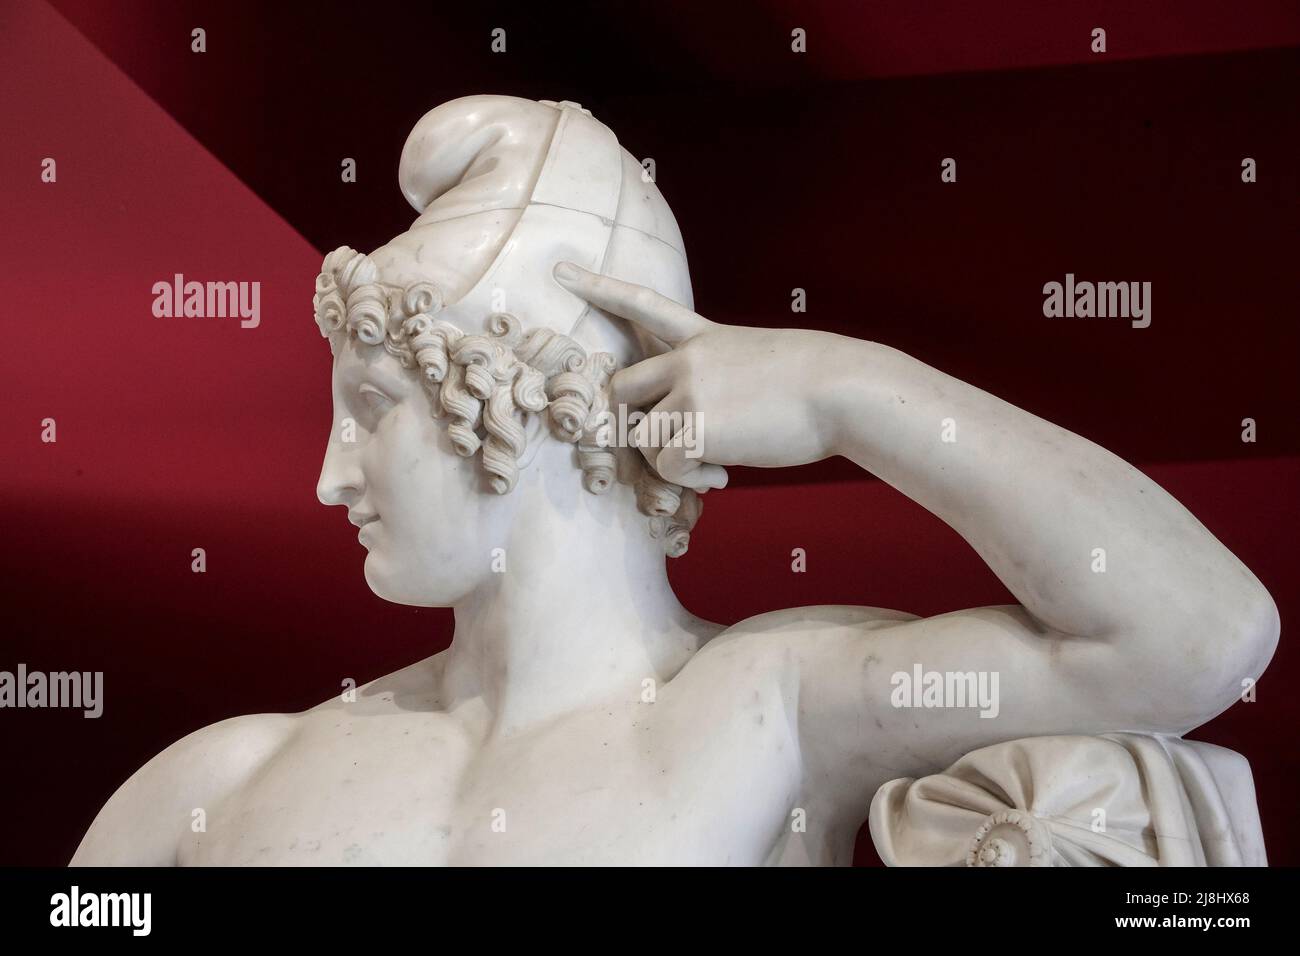 Paride - marmo - Antonio Canova - 1812 - Asolo (TV) ,italia, Museo Civico Foto Stock